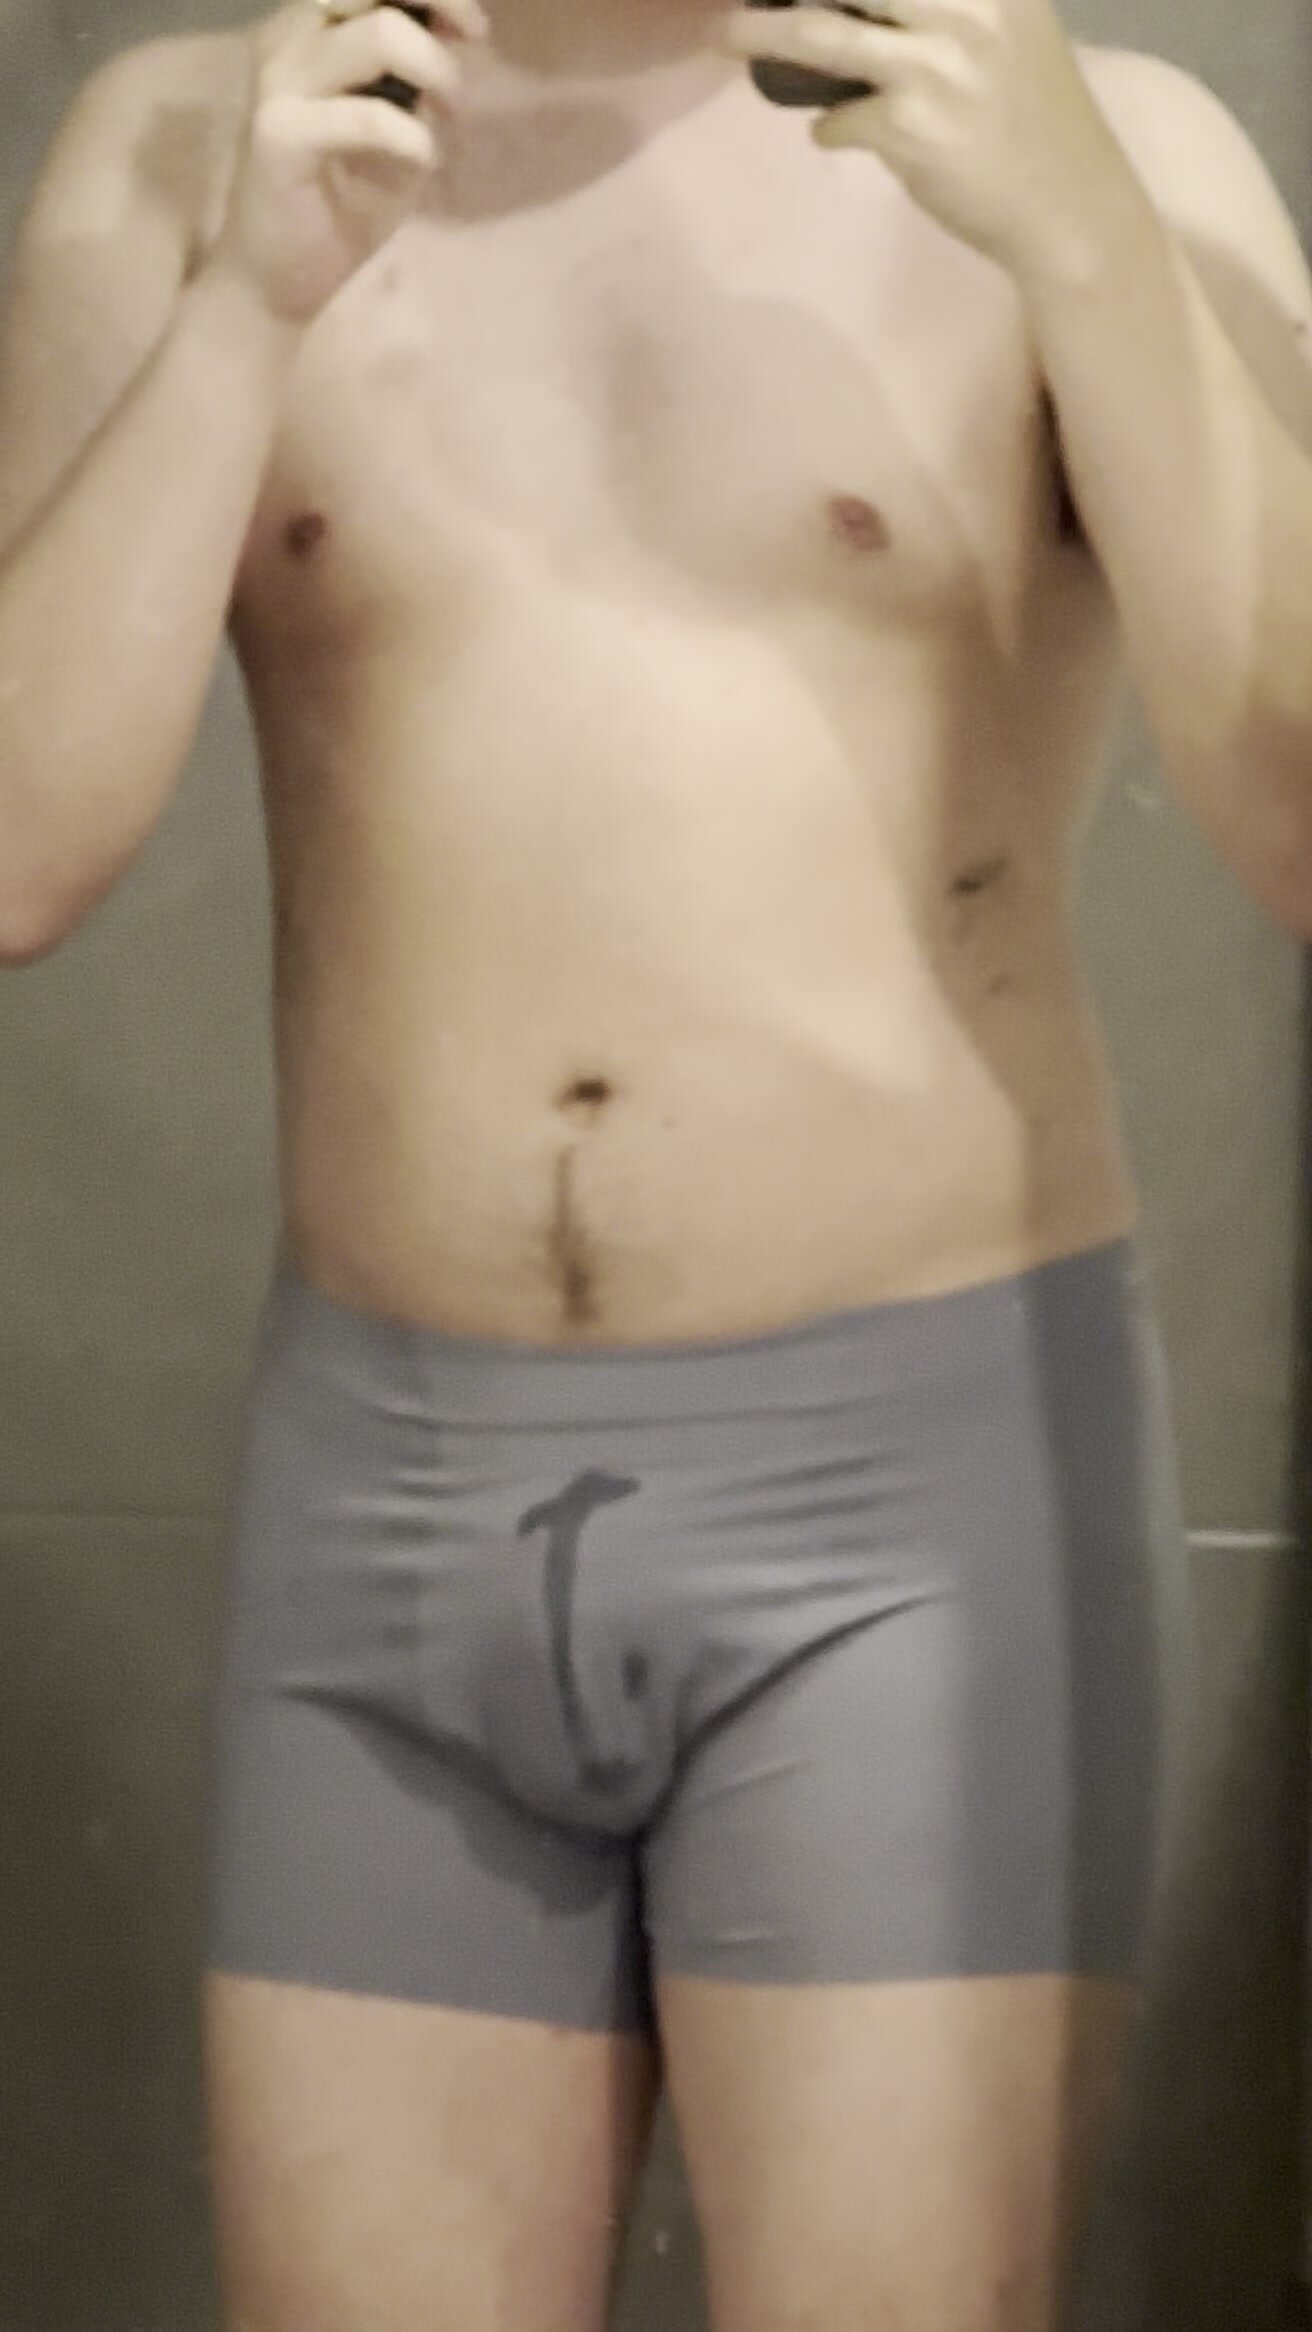 Wet my Uniqlo underwear before shower